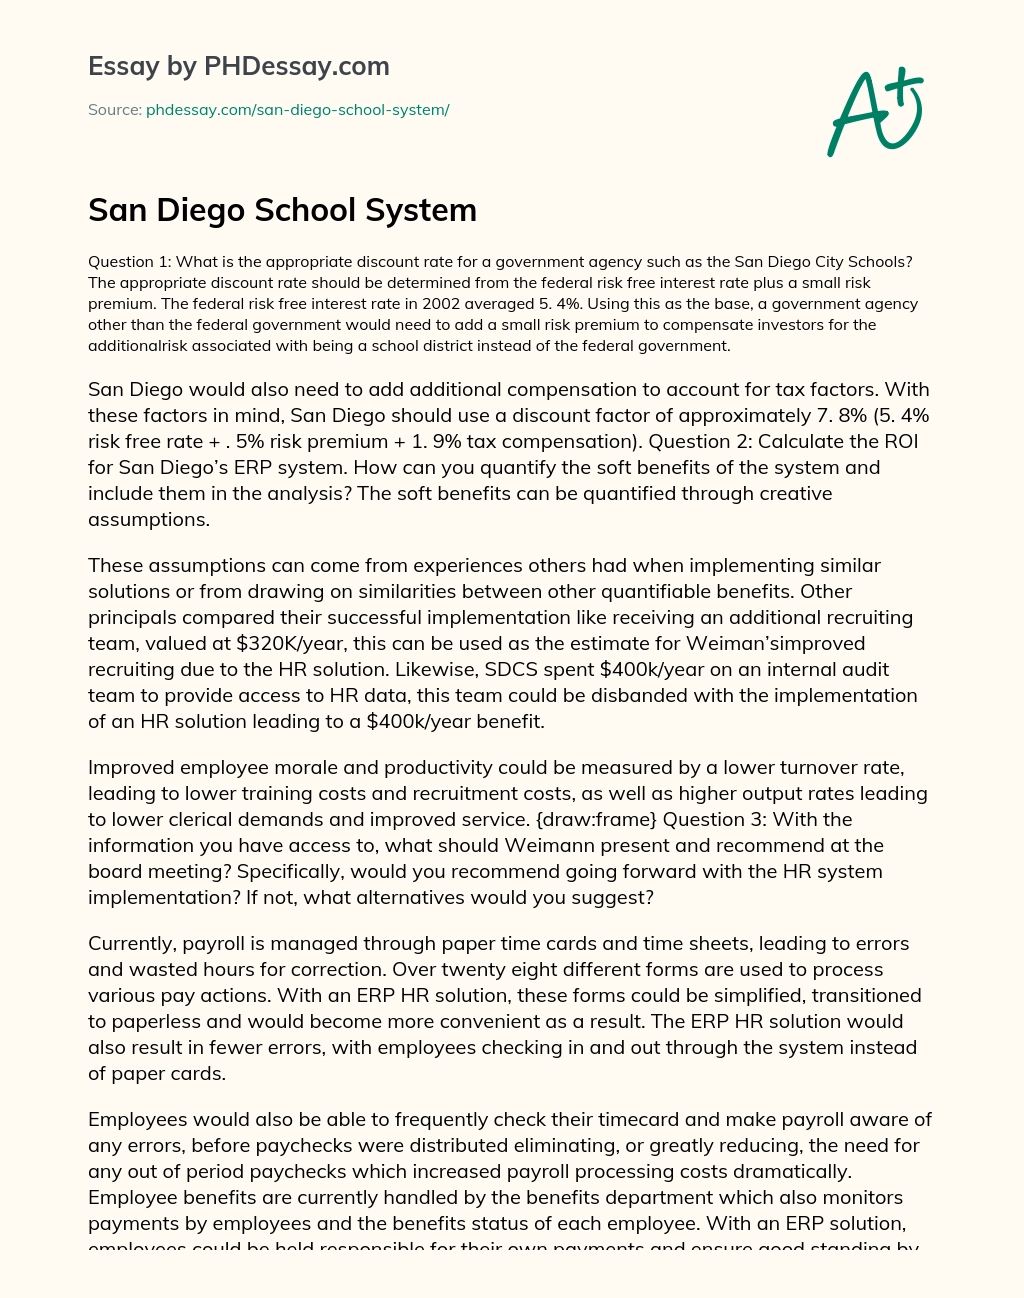 San Diego School System essay